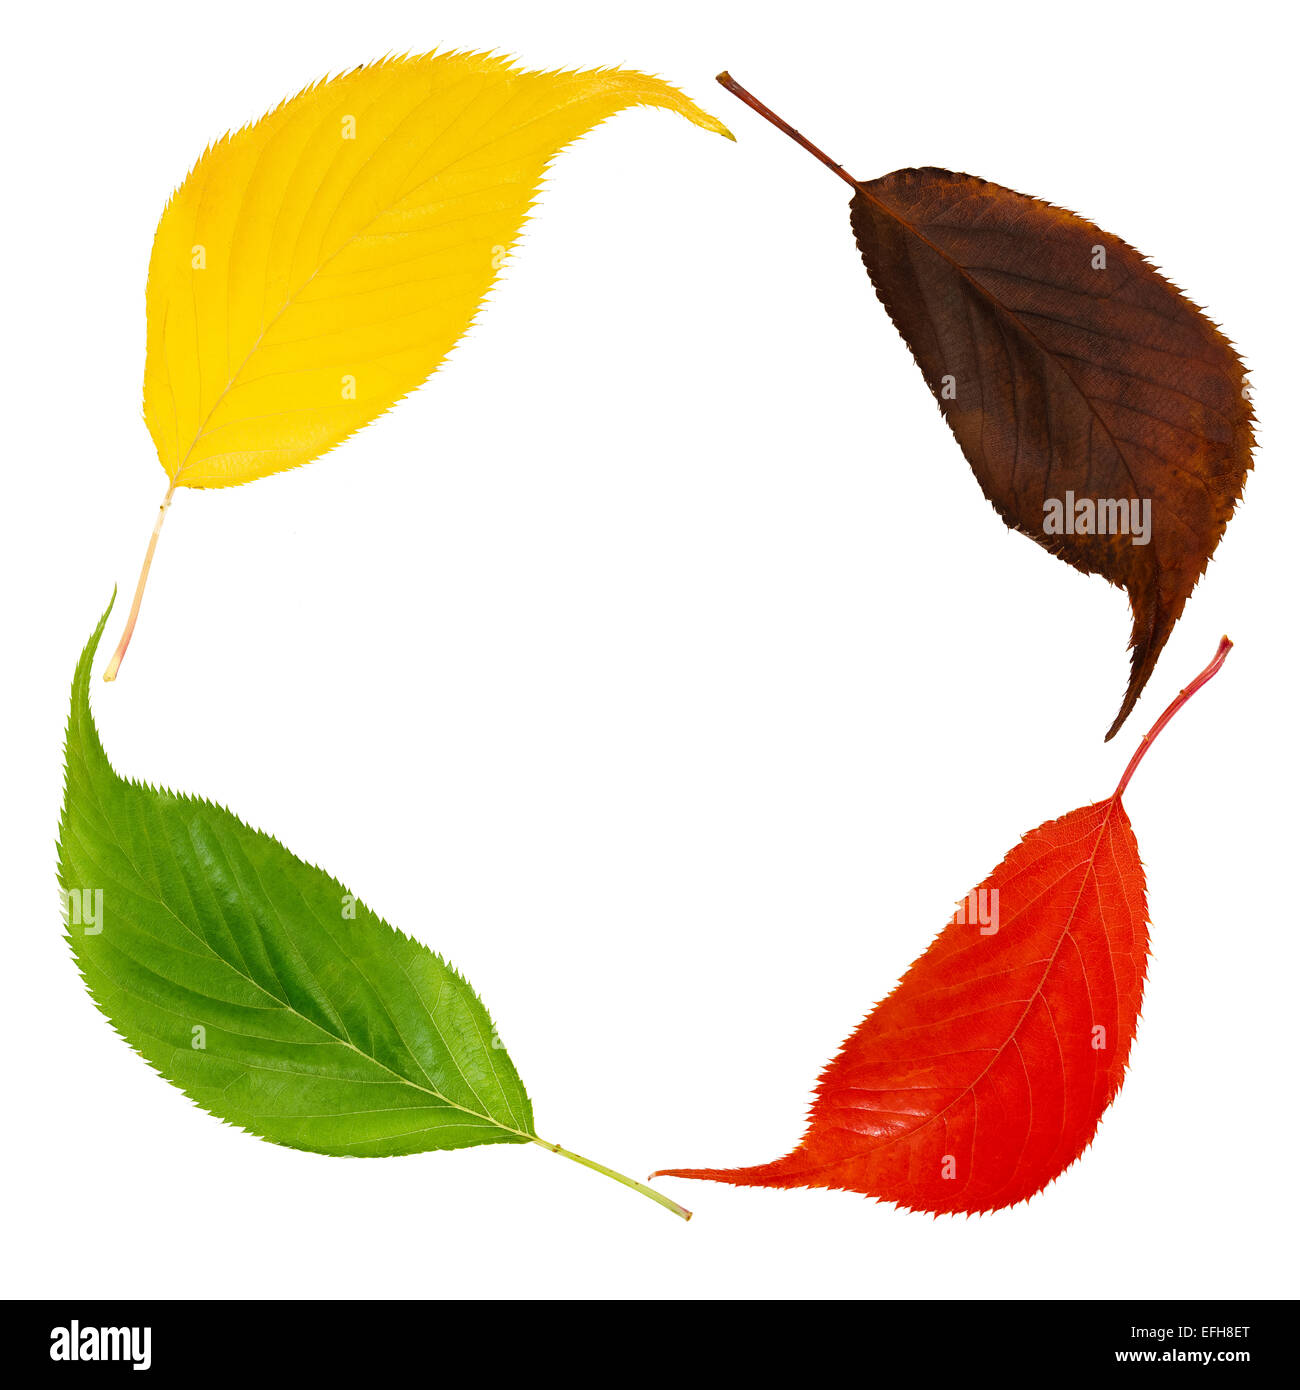 Recycling Recycling-Konzept Wechsel der Jahreszeiten Konzept Saisonale Farben farbige Kirschblätter Stockfoto